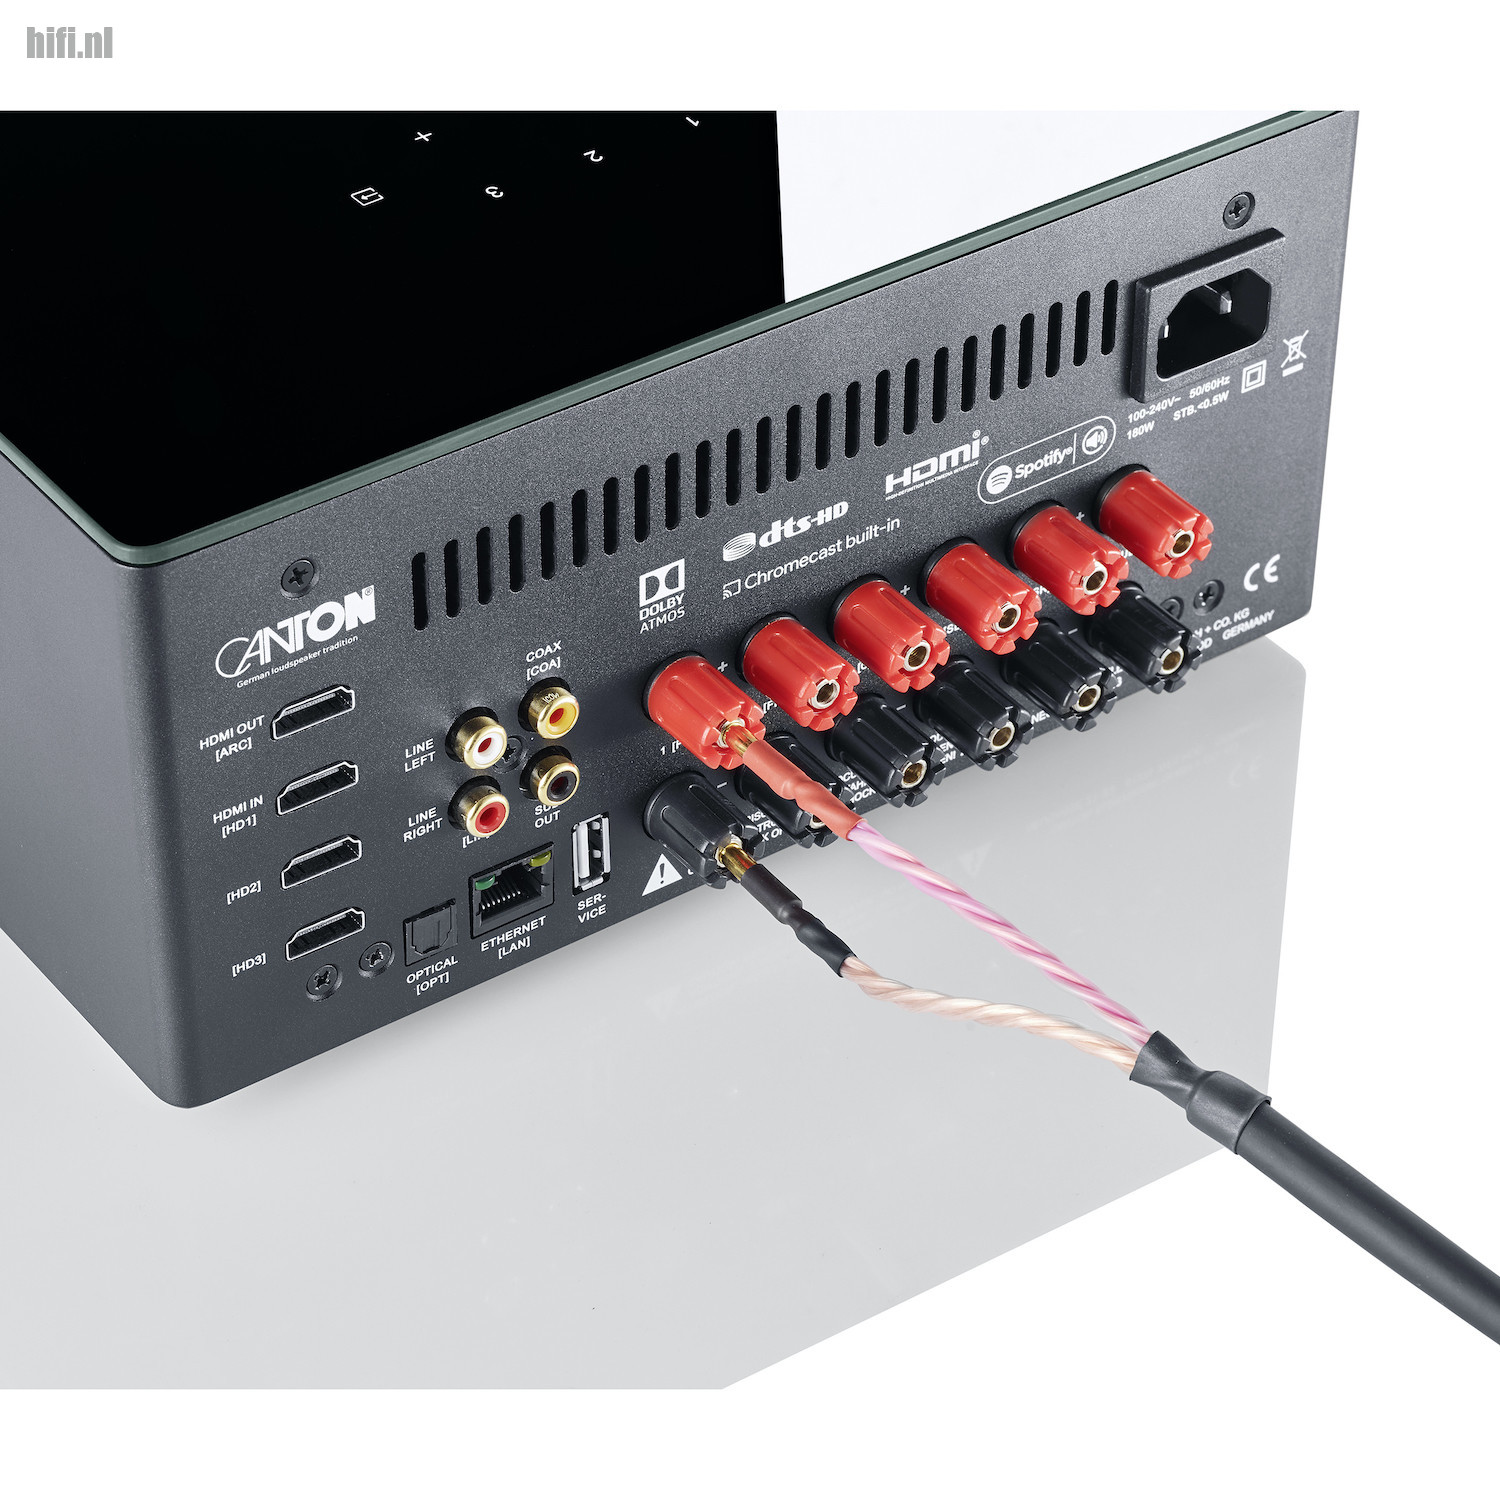 Fragiel worstelen Lionel Green Street Review Canton Smart Amp 5.1 een heel andere AV receiver